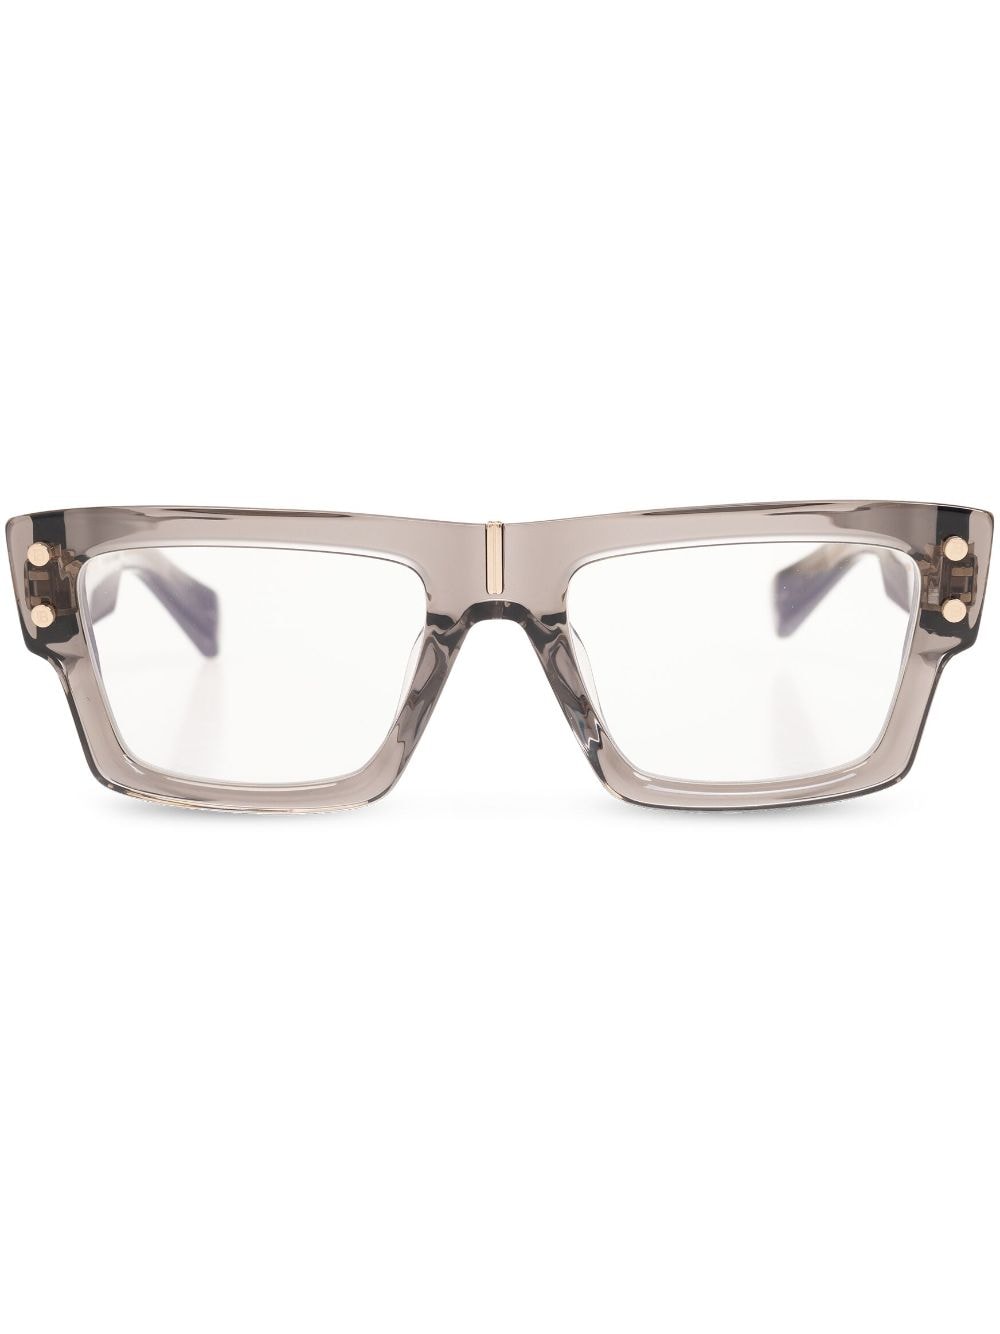 Balmain Eyewear Sonnenbrille mit eckigem Gestell - Braun von Balmain Eyewear